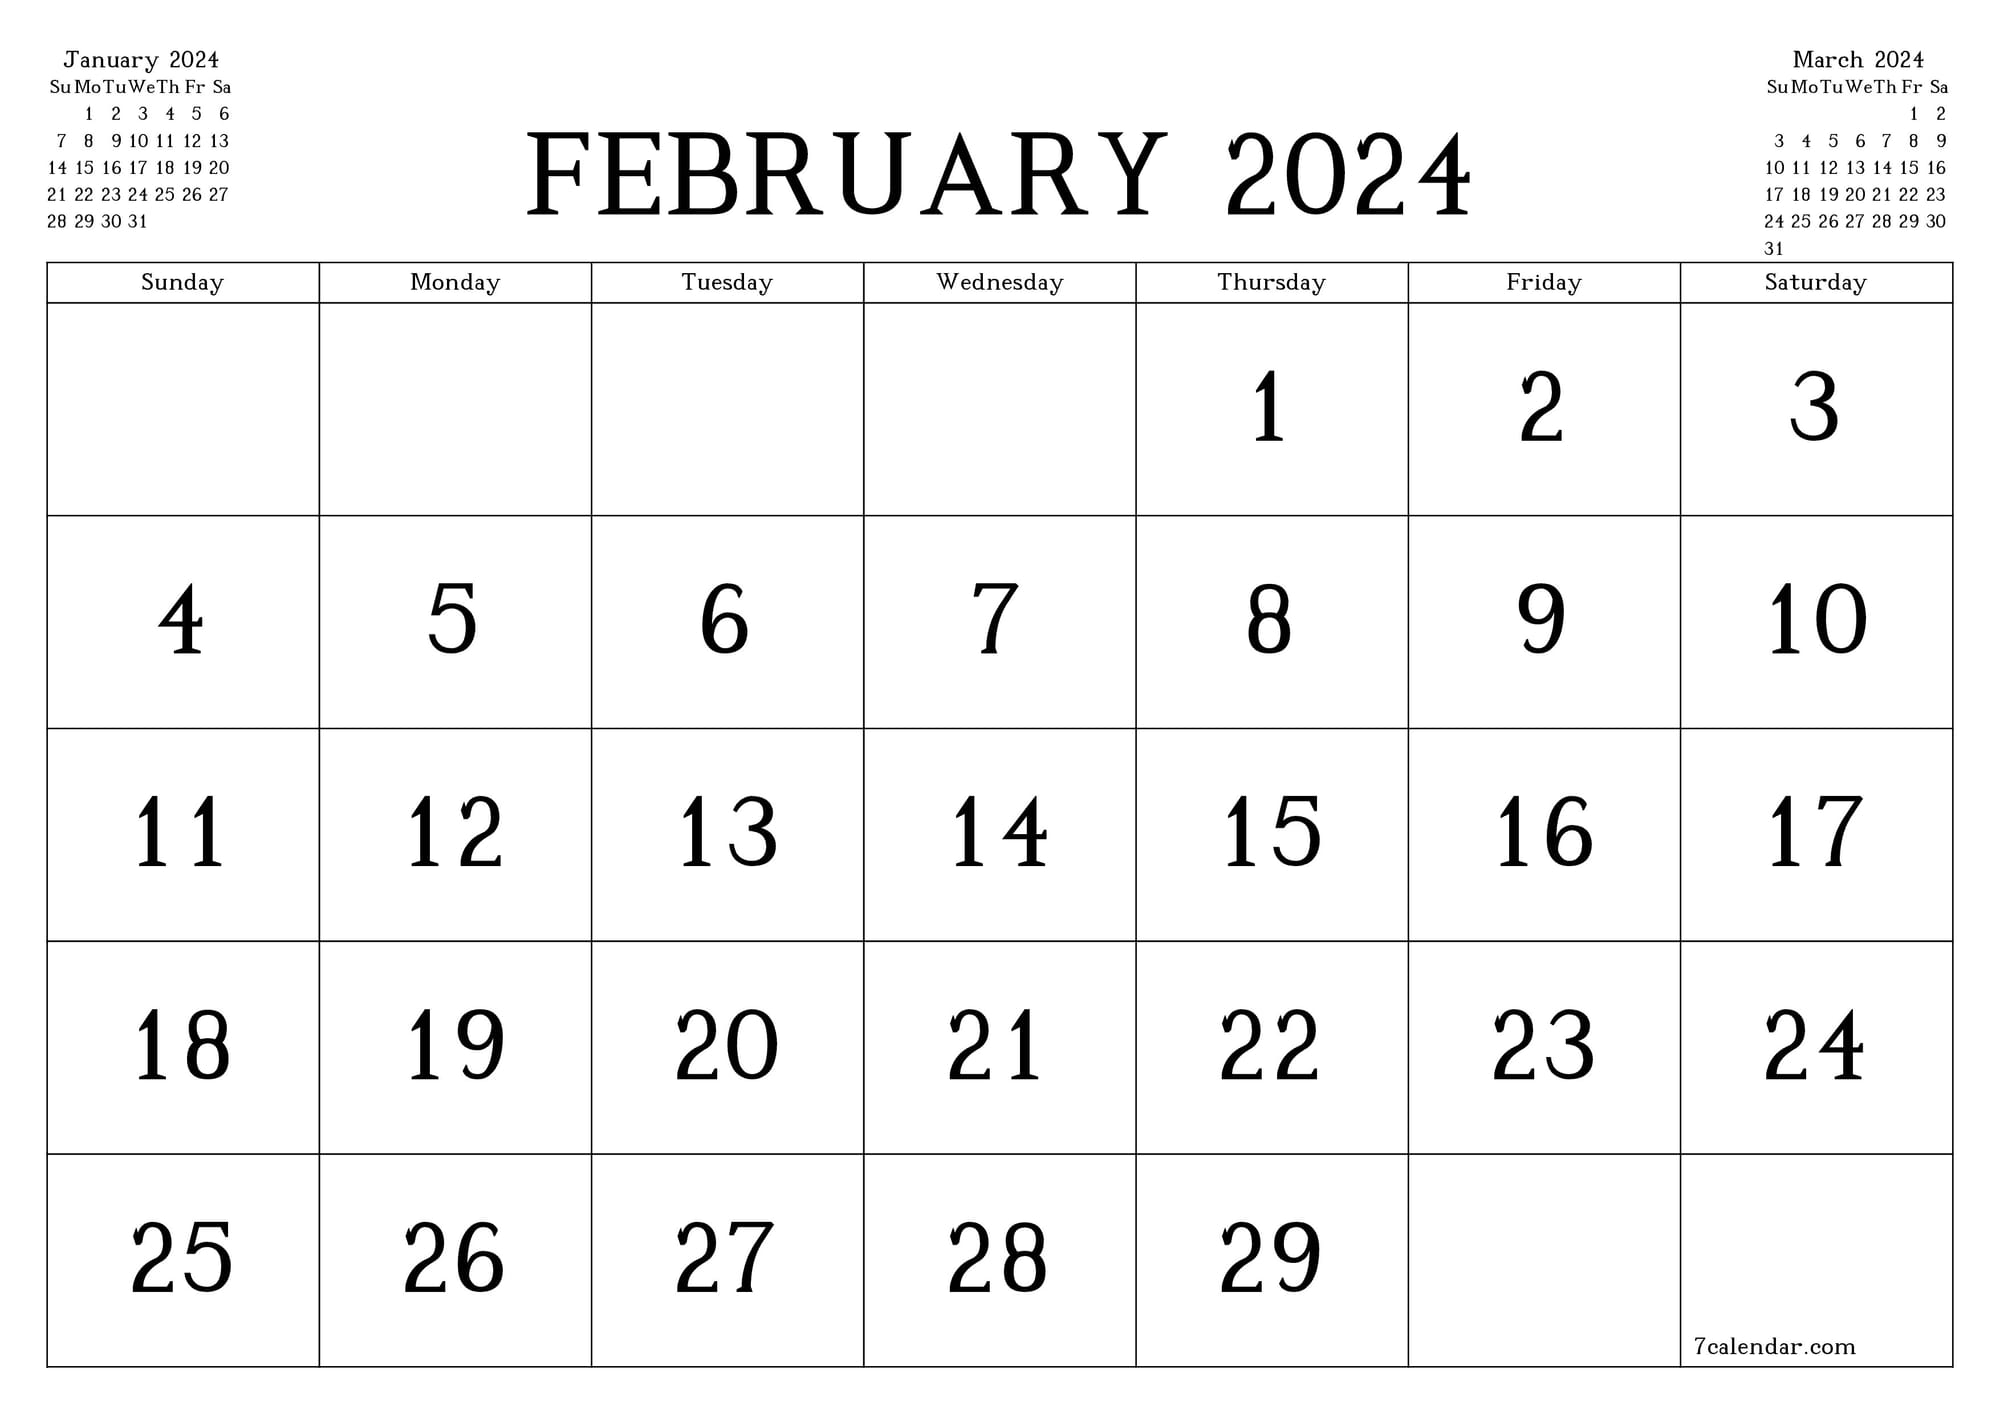 Calendar for February 2024, including February 29